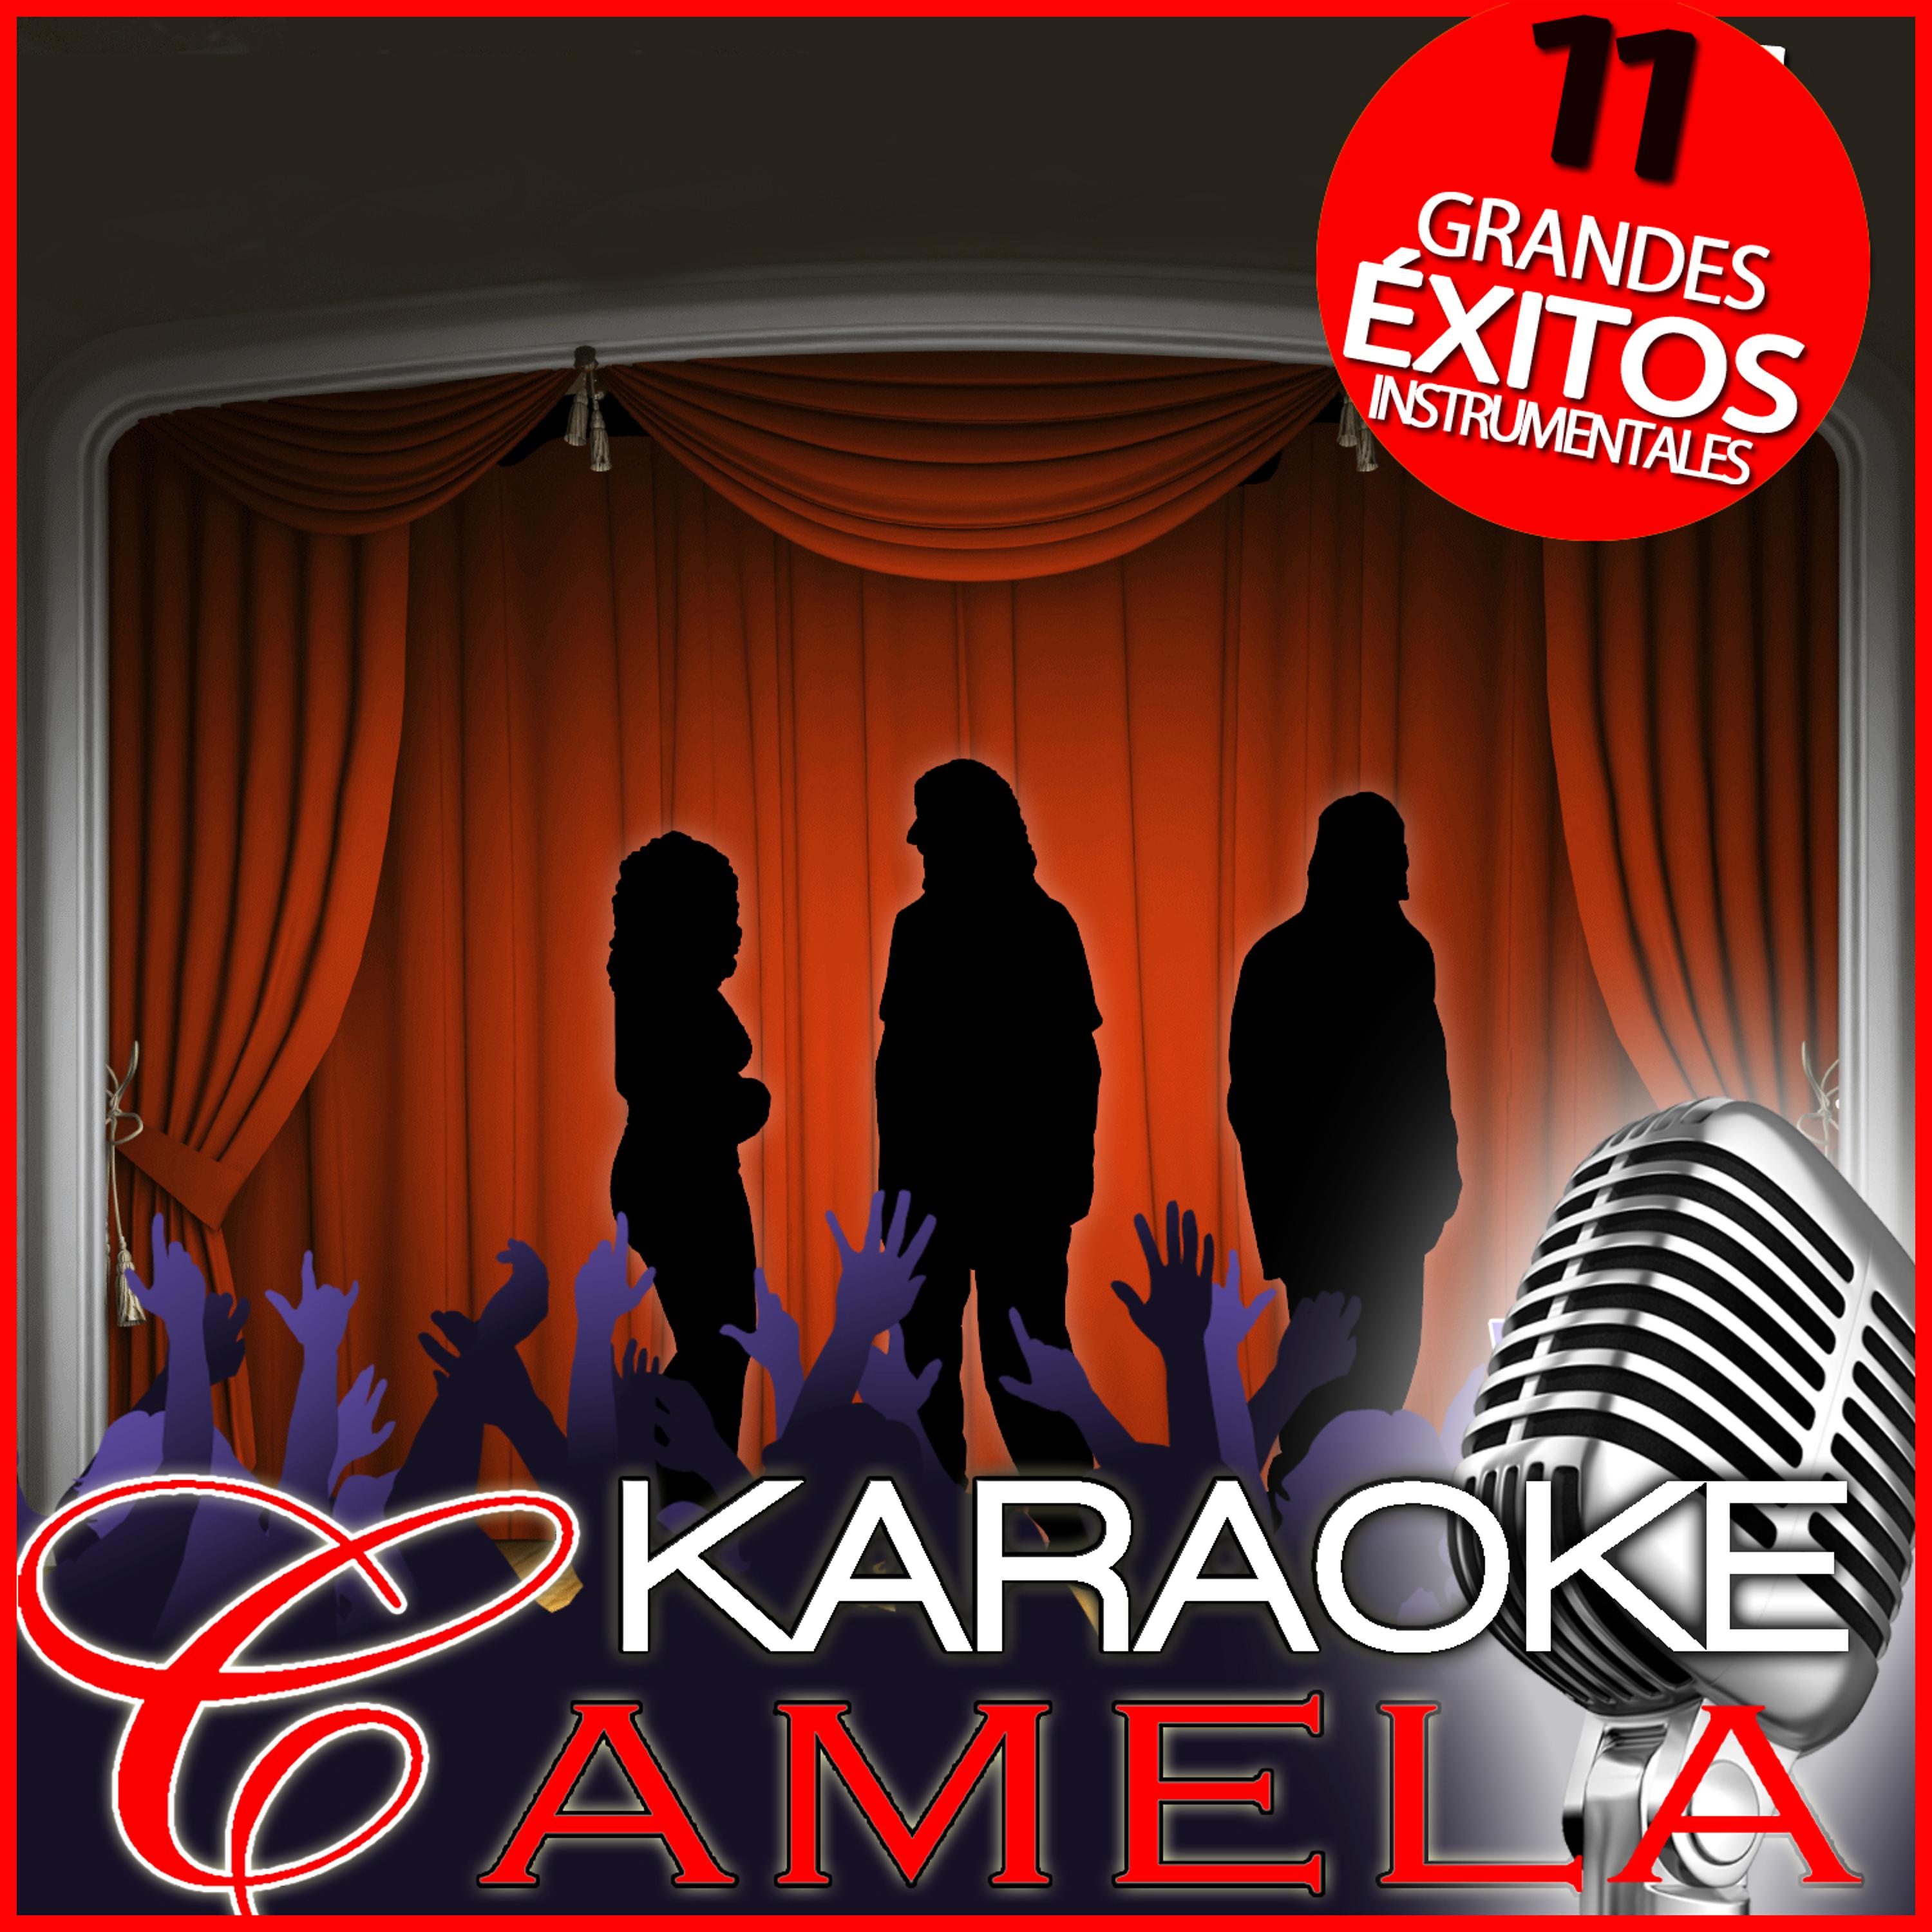 Постер альбома Karaoke Camela. 11 Grandes Éxitos Instrumentales